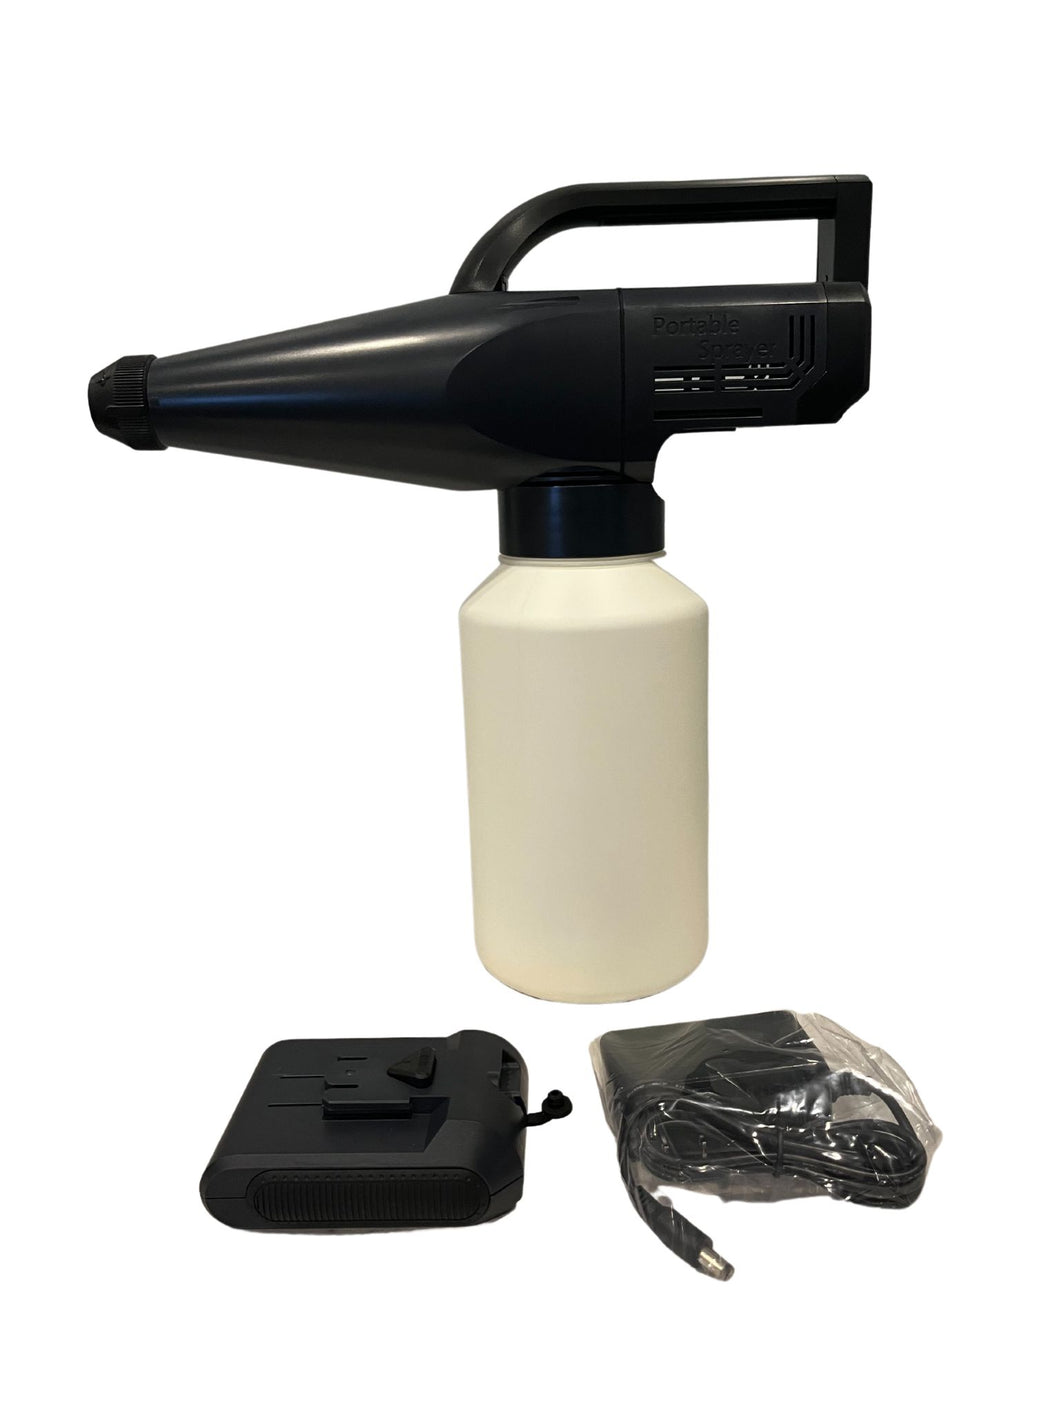 UltraSprayer Cordless Disinfecting/Sanitizing/Pesticide Sprayer | A Compact, Cordless, Portable Sprayer